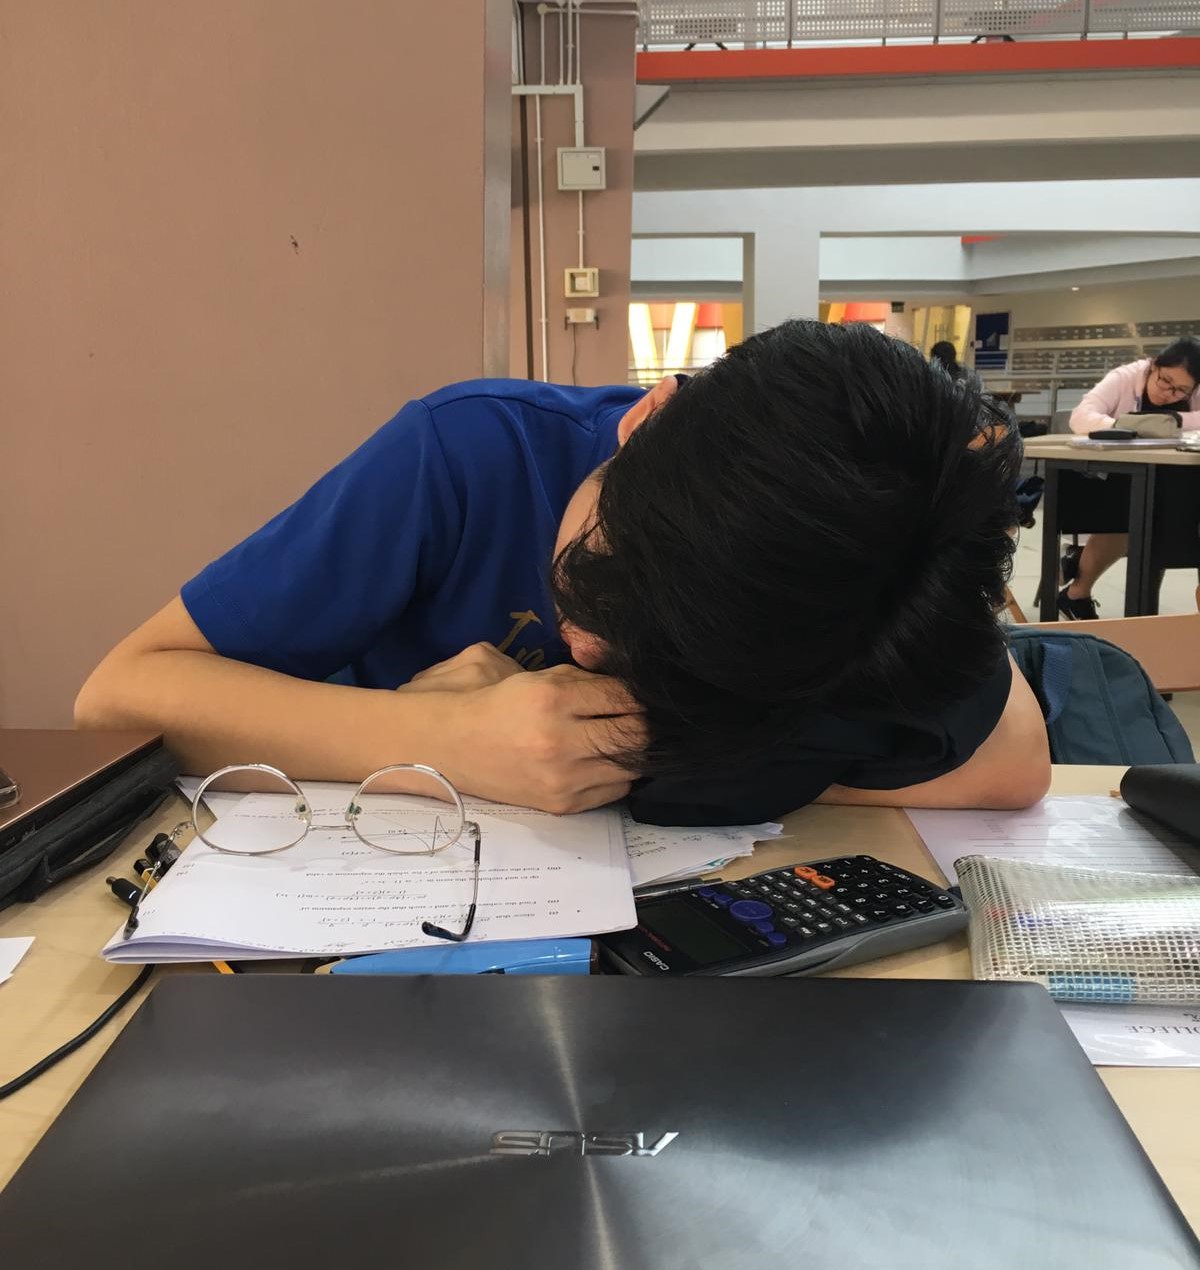 sleeping in school - insomnia and sleep anxiety